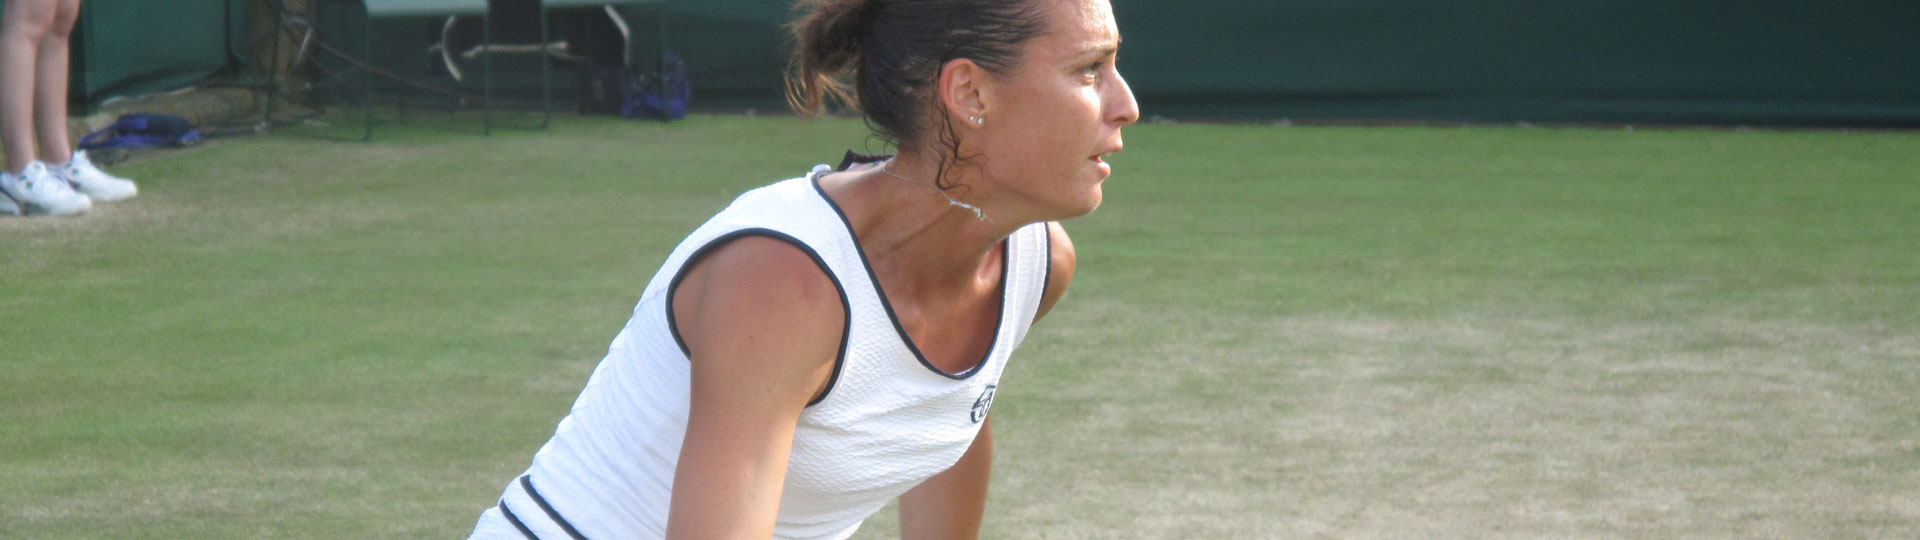 WTA Cincinnati Open - 2005